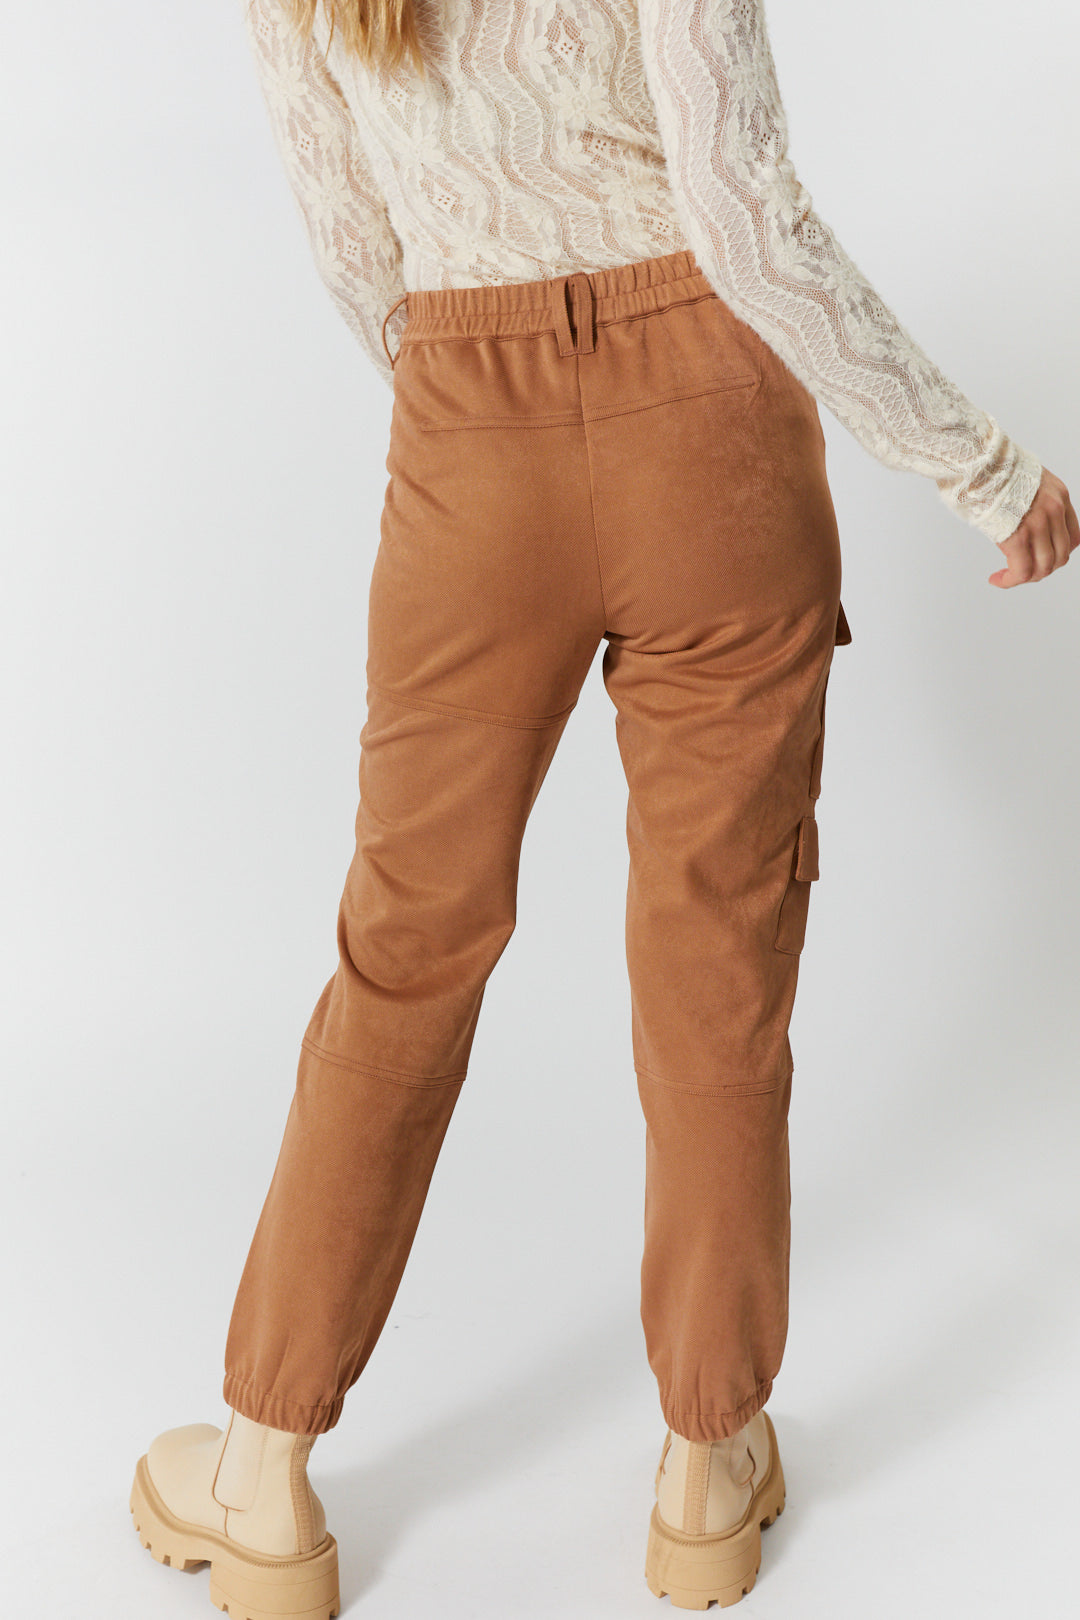 Textured tan pants | Daphne